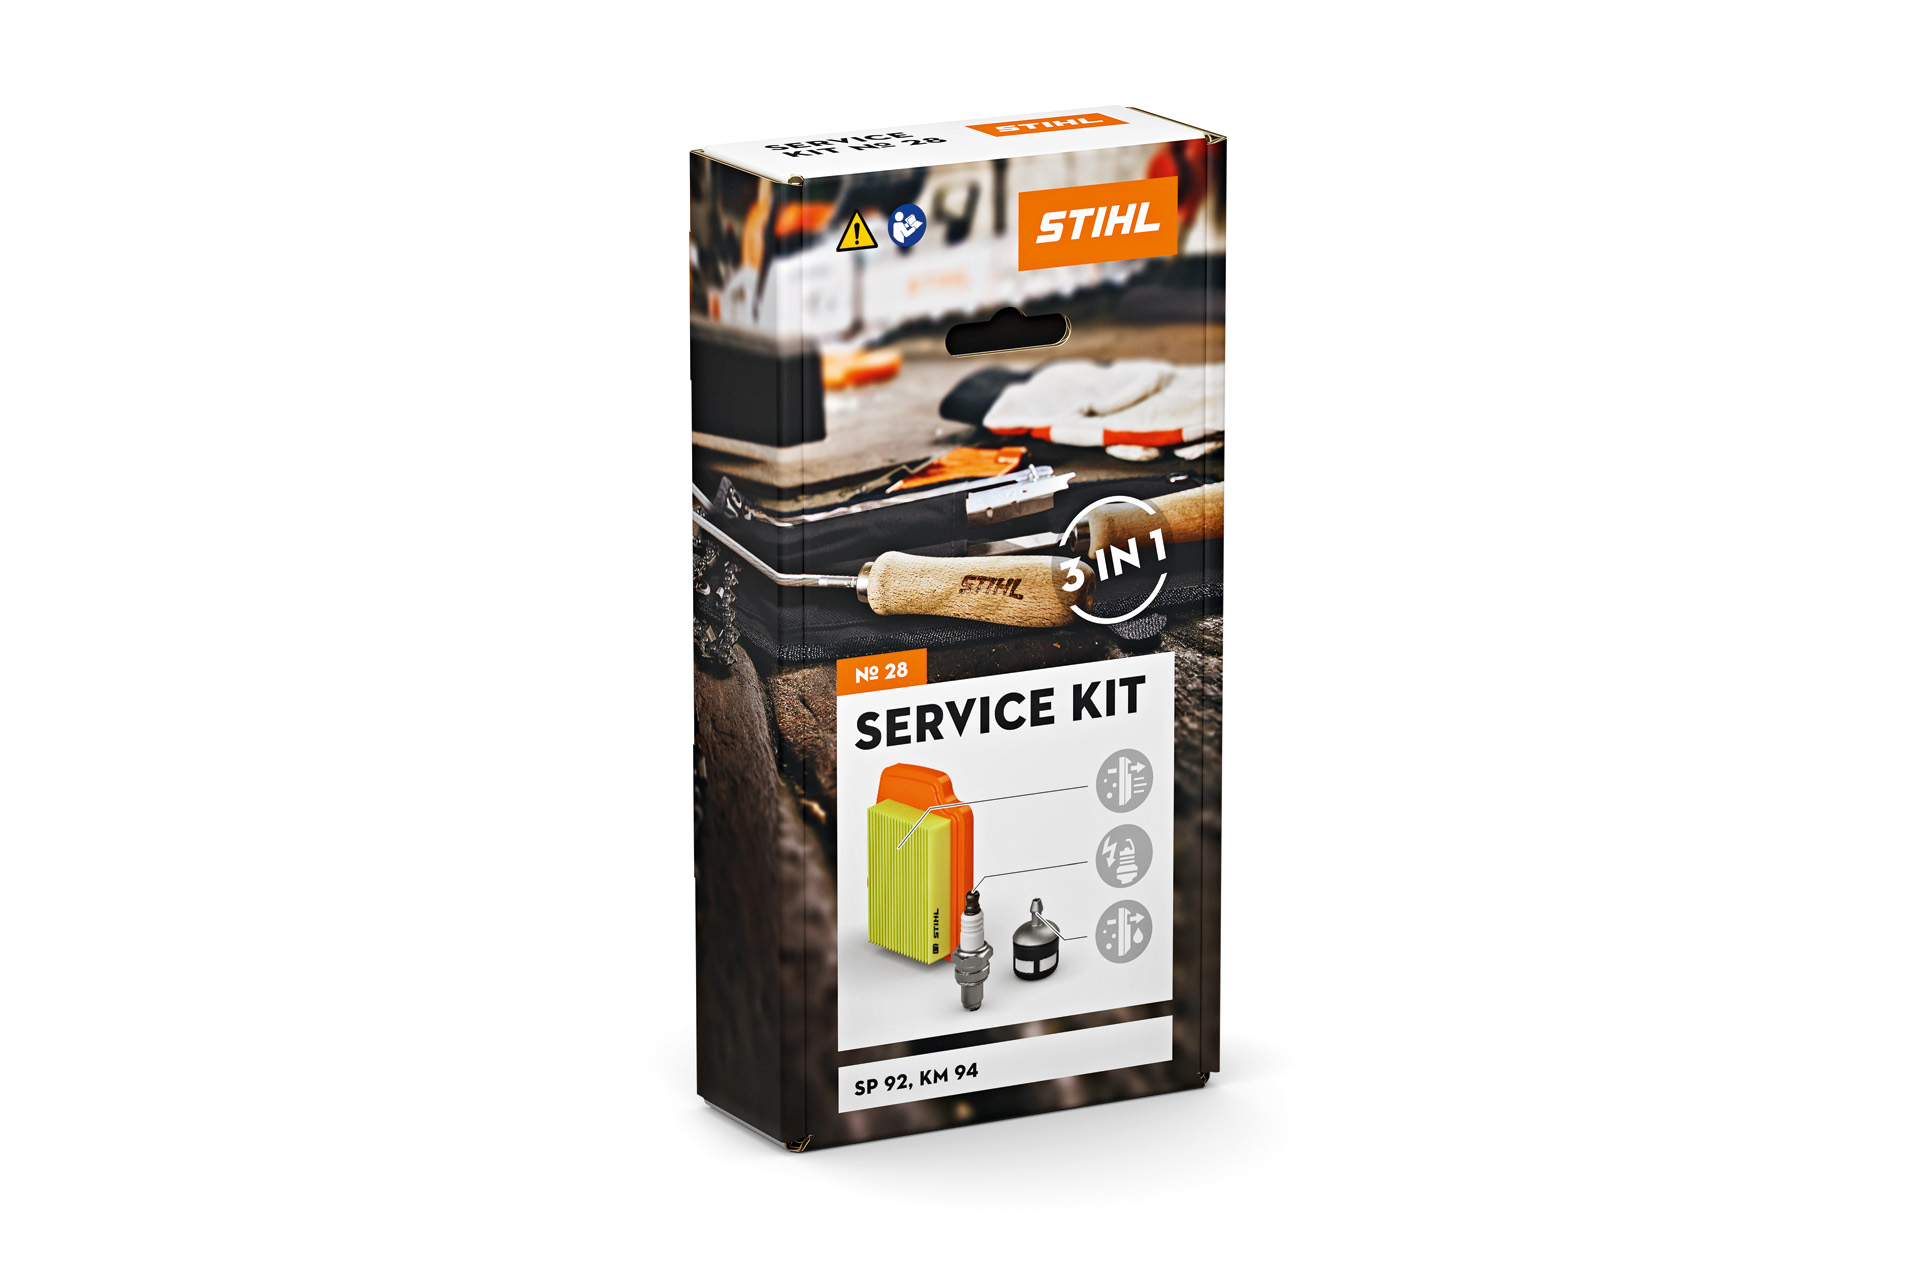 Service Kit 28